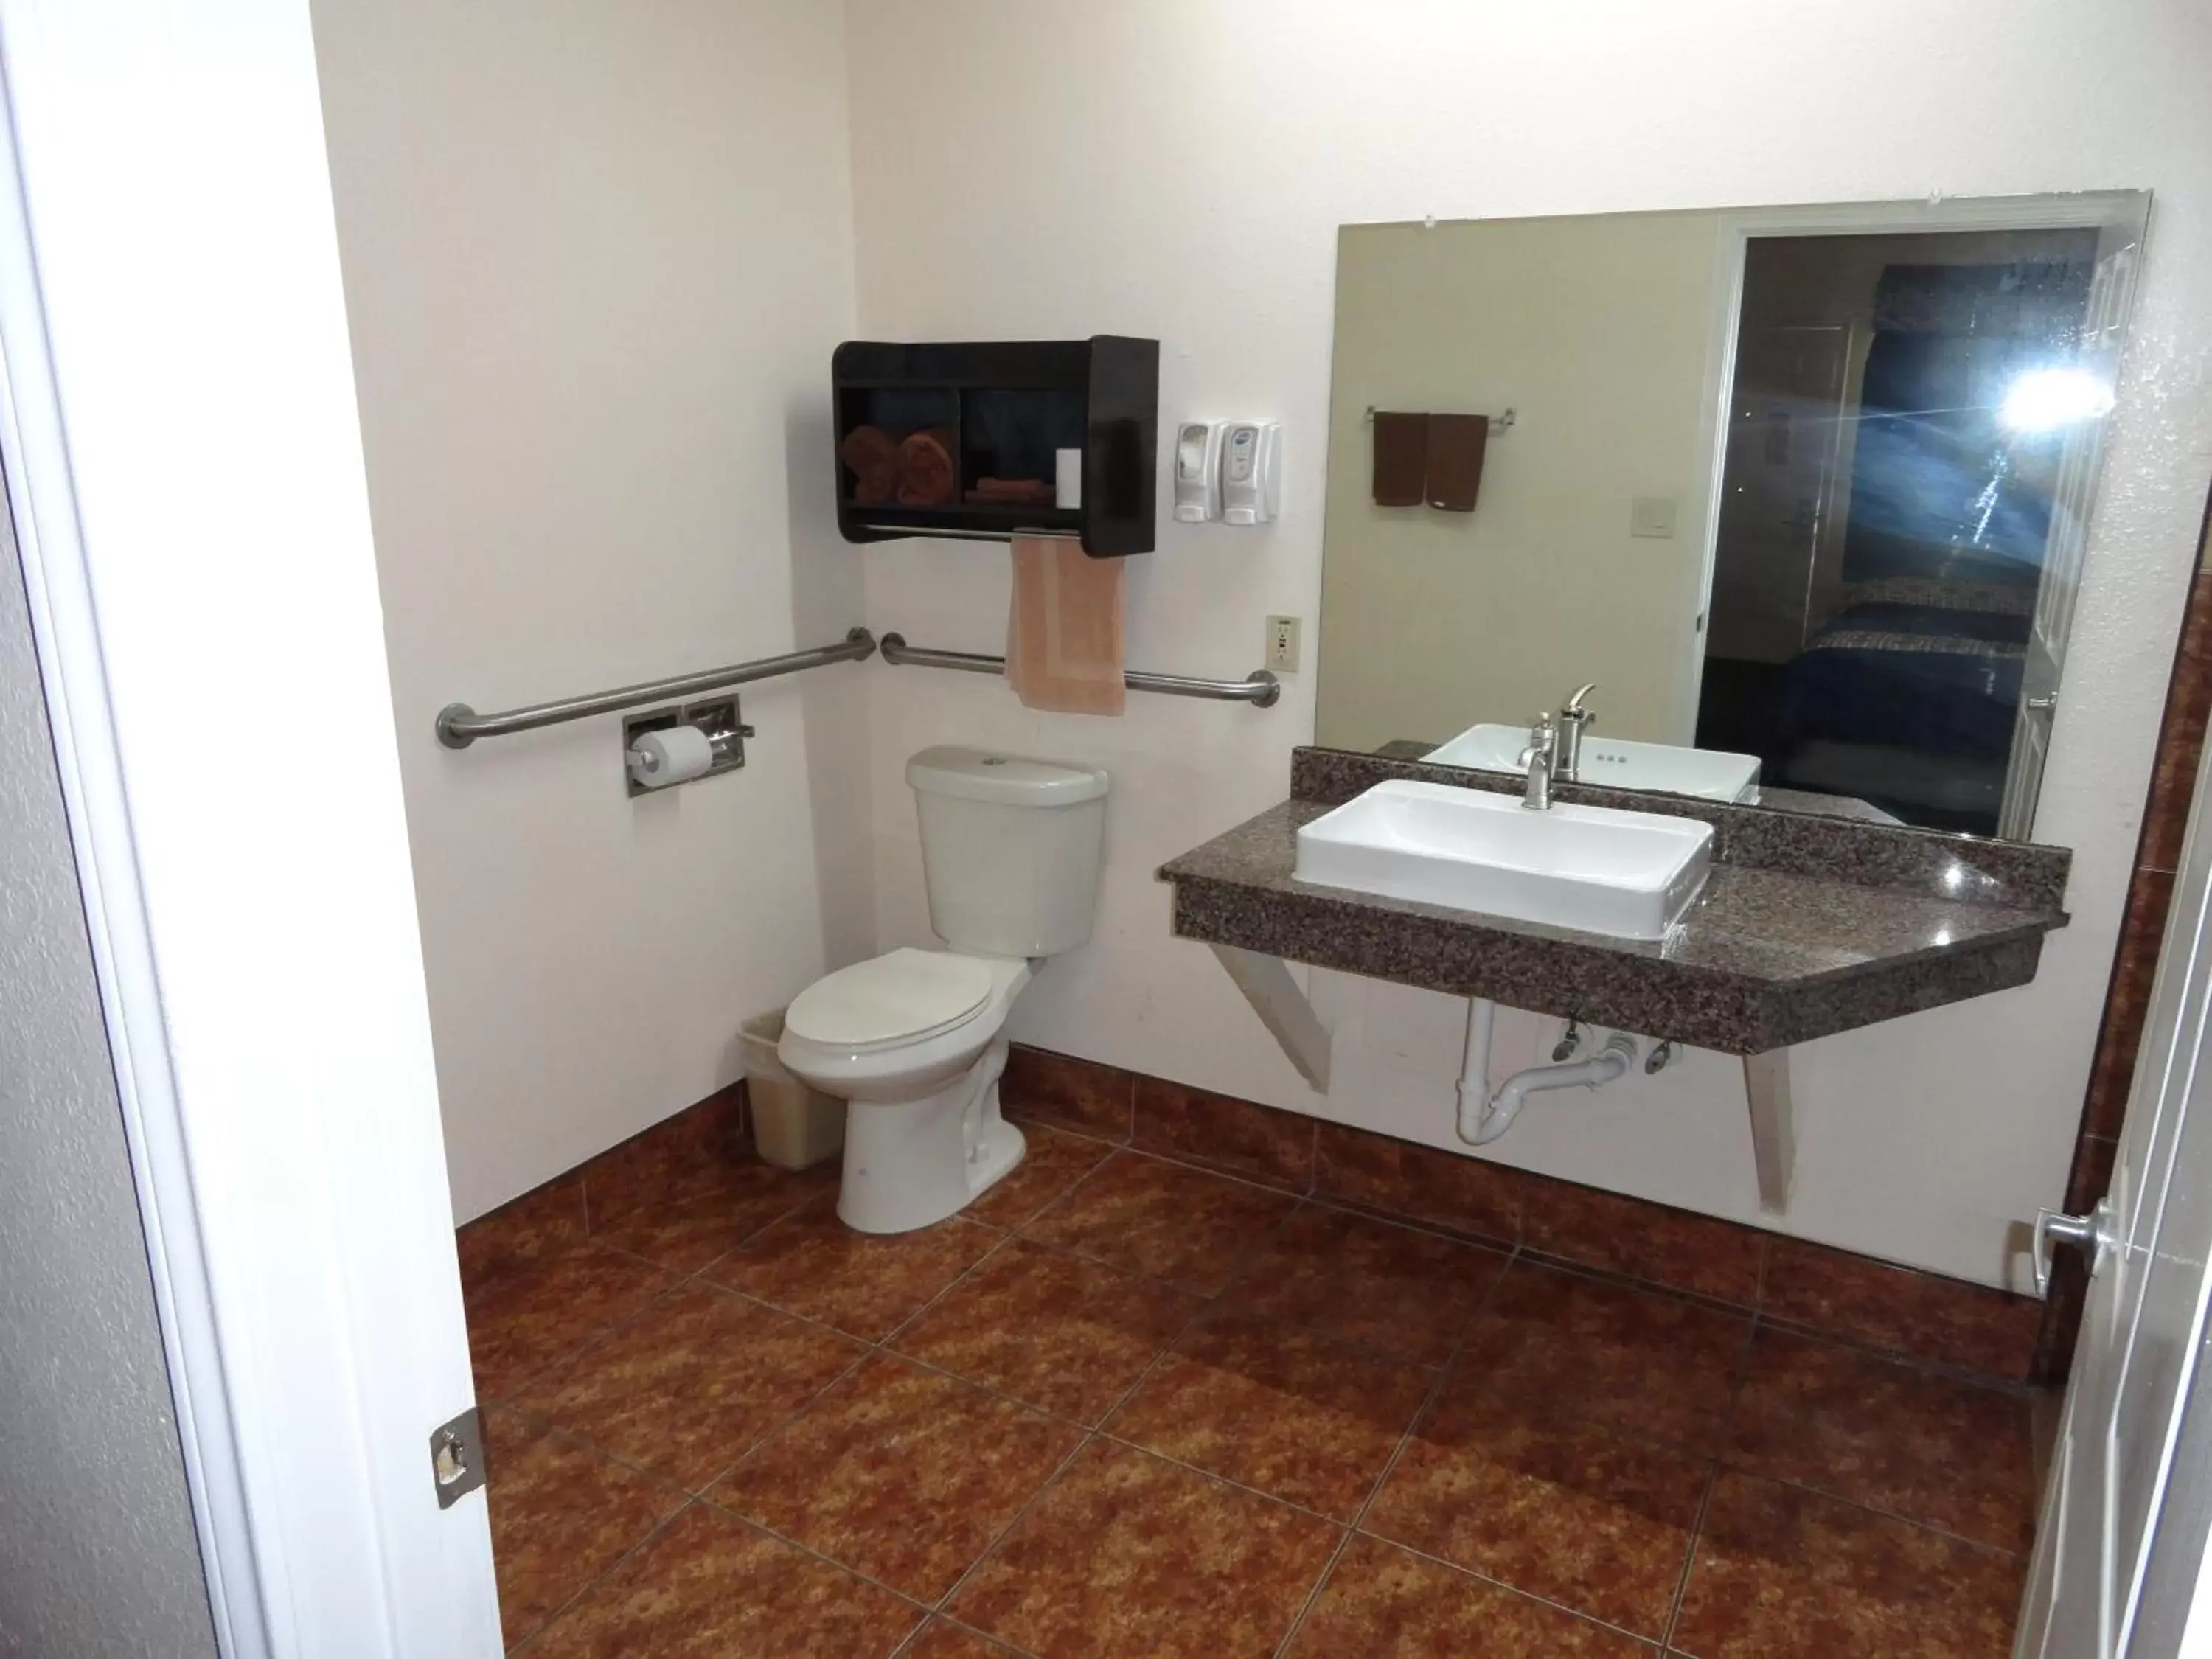 Bathroom in Americas Best Value Inn - Brownsville